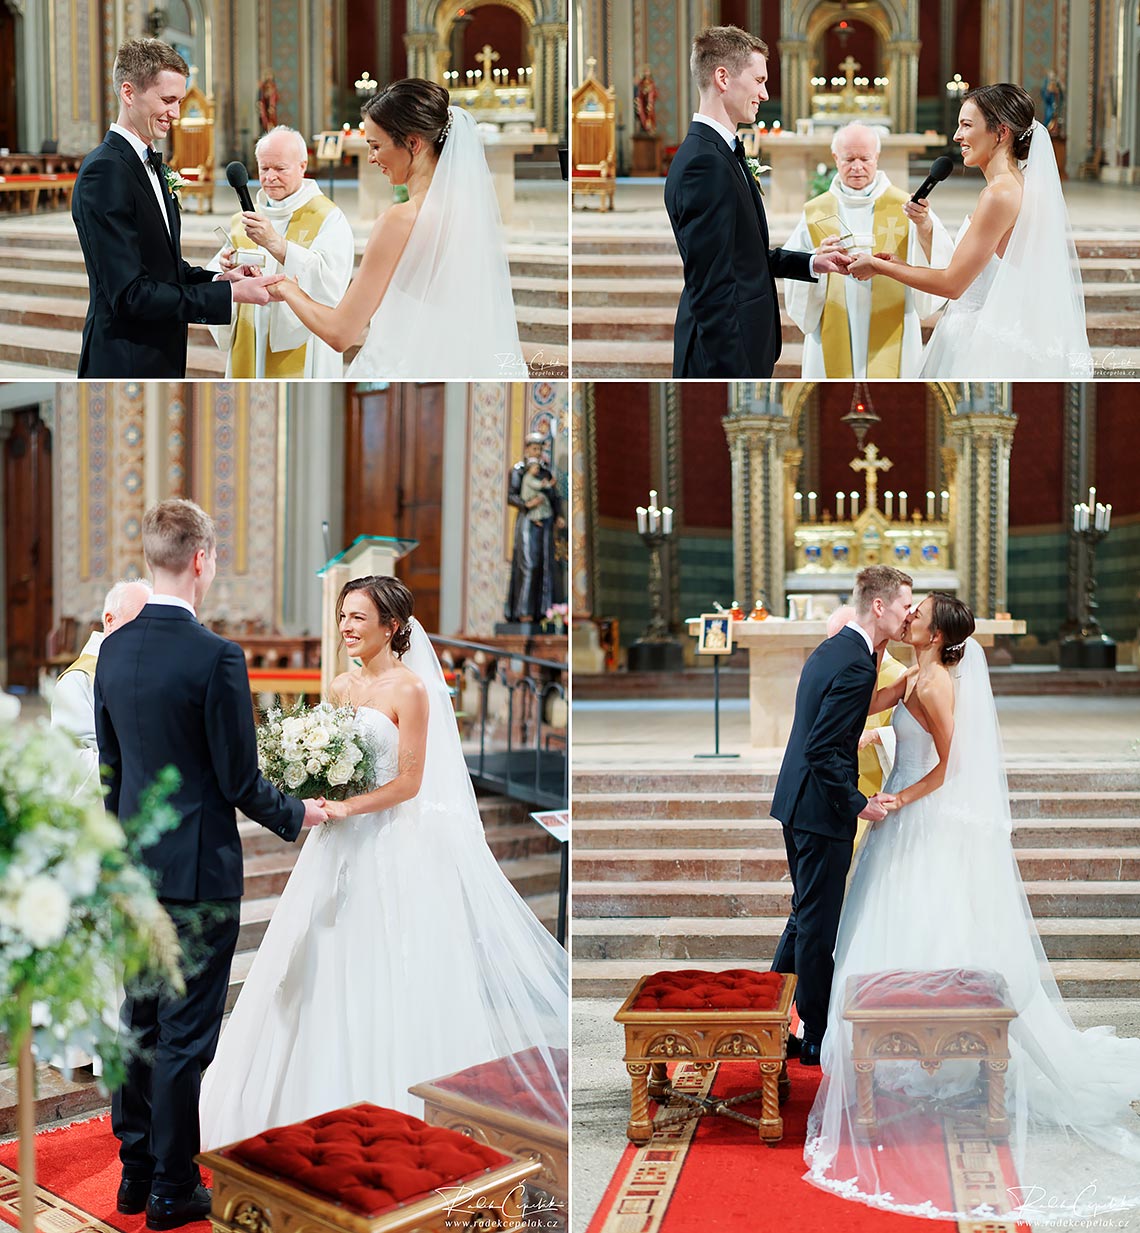 religious wedding ceremony in Prague